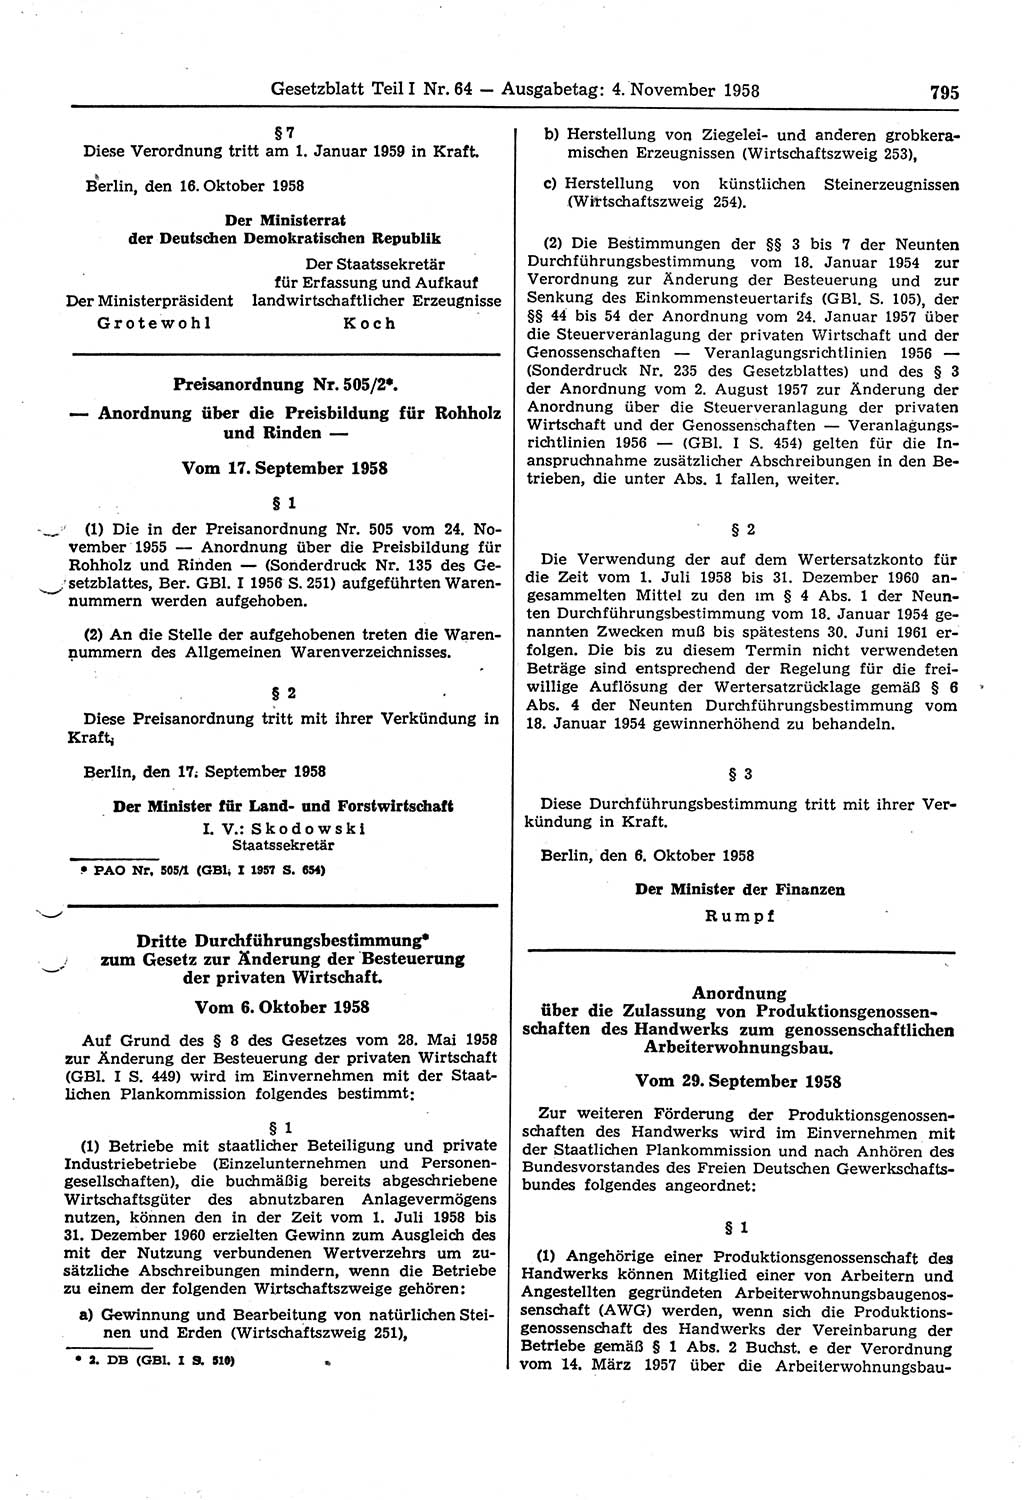 Gesetzblatt (GBl.) der Deutschen Demokratischen Republik (DDR) Teil Ⅰ 1958, Seite 795 (GBl. DDR Ⅰ 1958, S. 795)